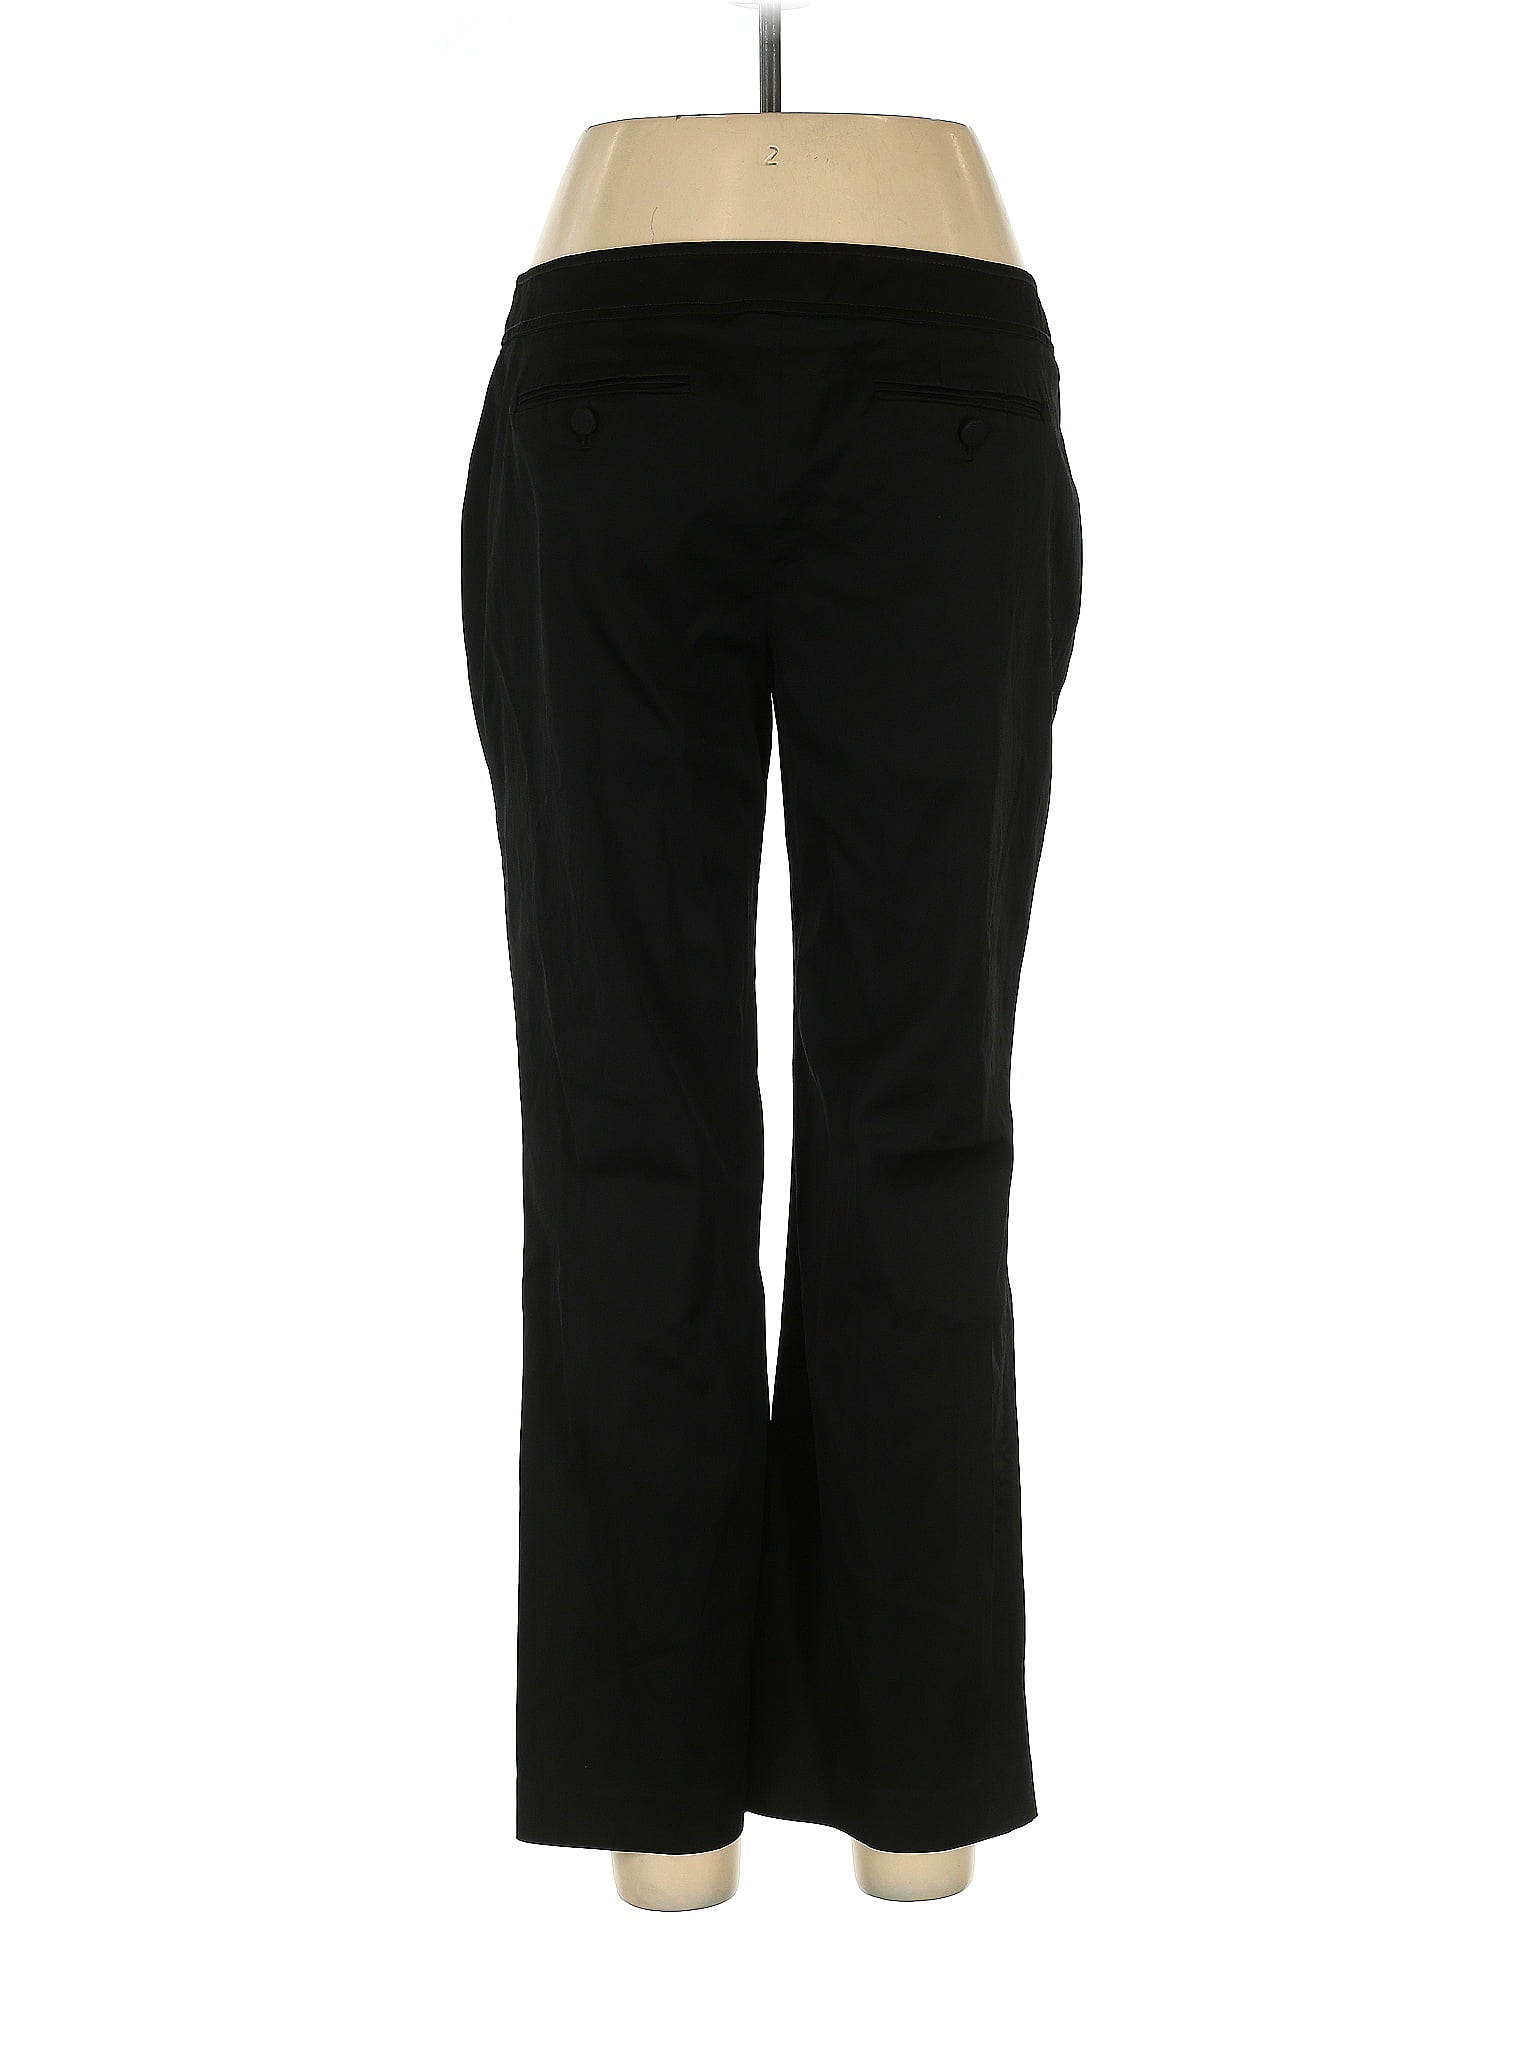 Ann Taylor 100% Cotton Polka Dots Black Dress Pants Size 12